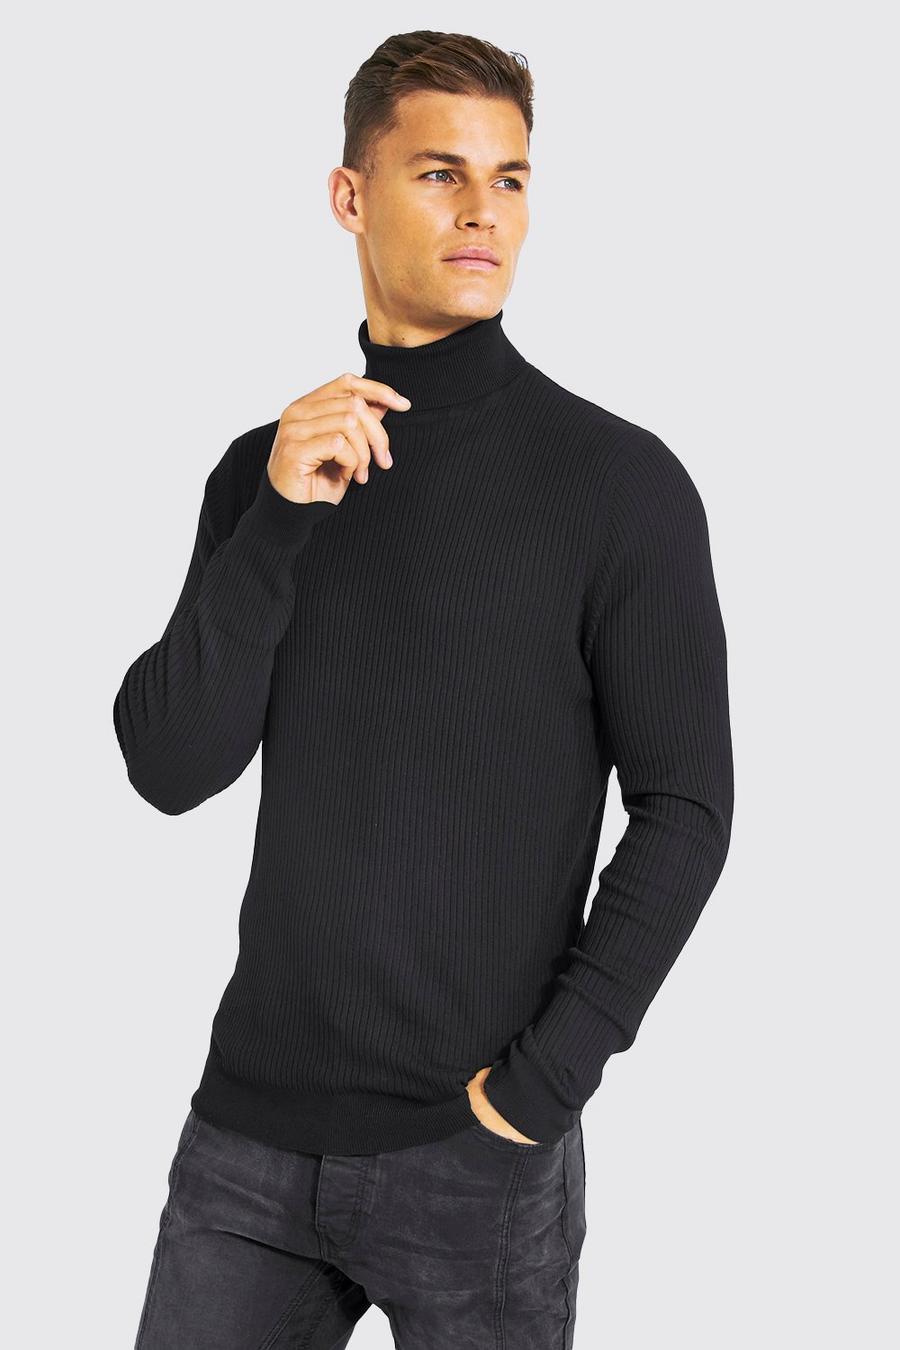 שחור black סוודר ארוג מבד ממוחזר עם צווארון גולף לנשים גבוהות